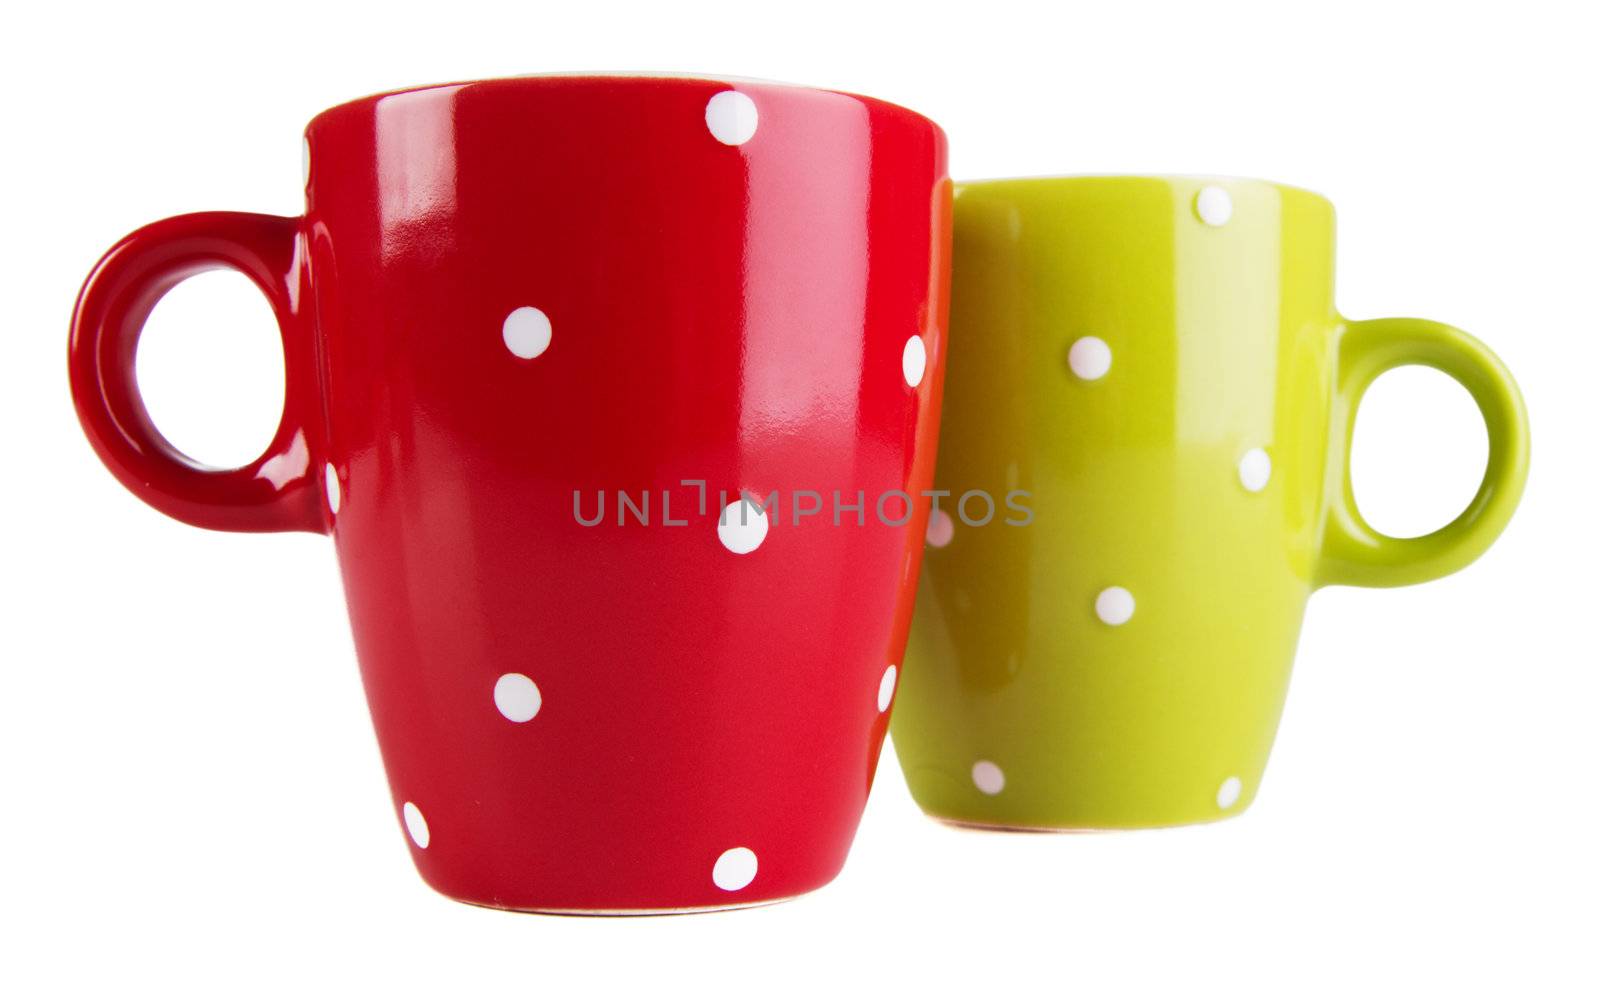 Tea cups by Gdolgikh